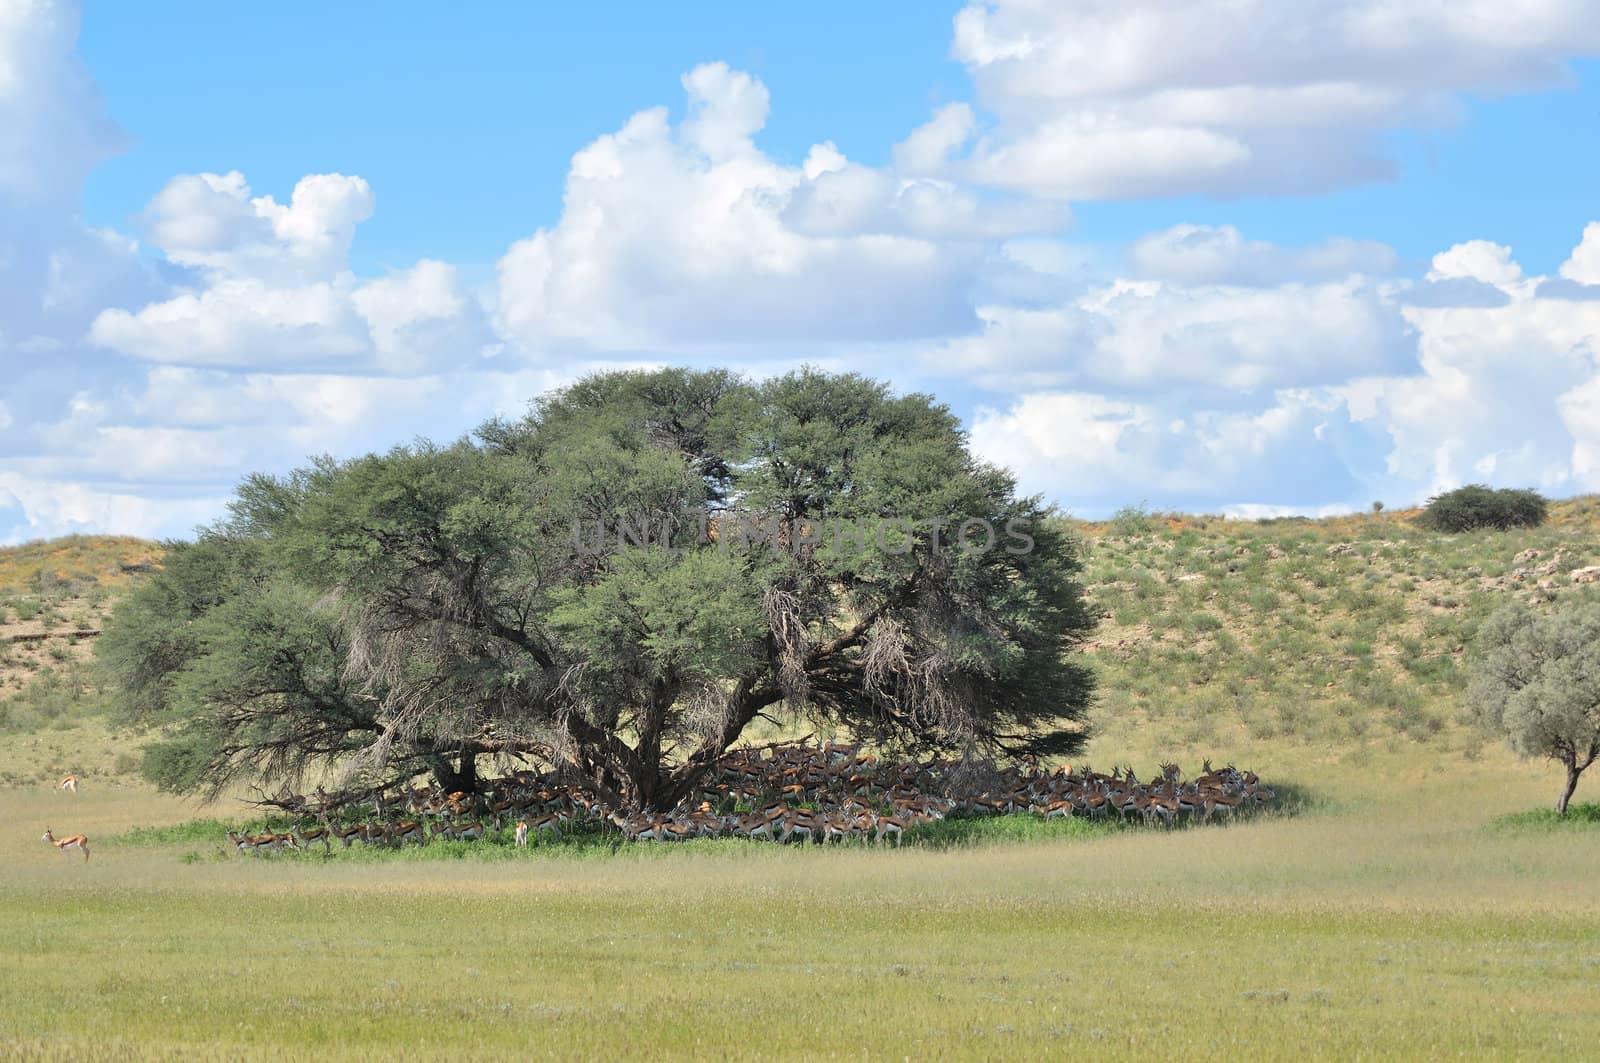 Springbok herd hiding for the sun, Kgalagadi Transfrontier Park, South Africa